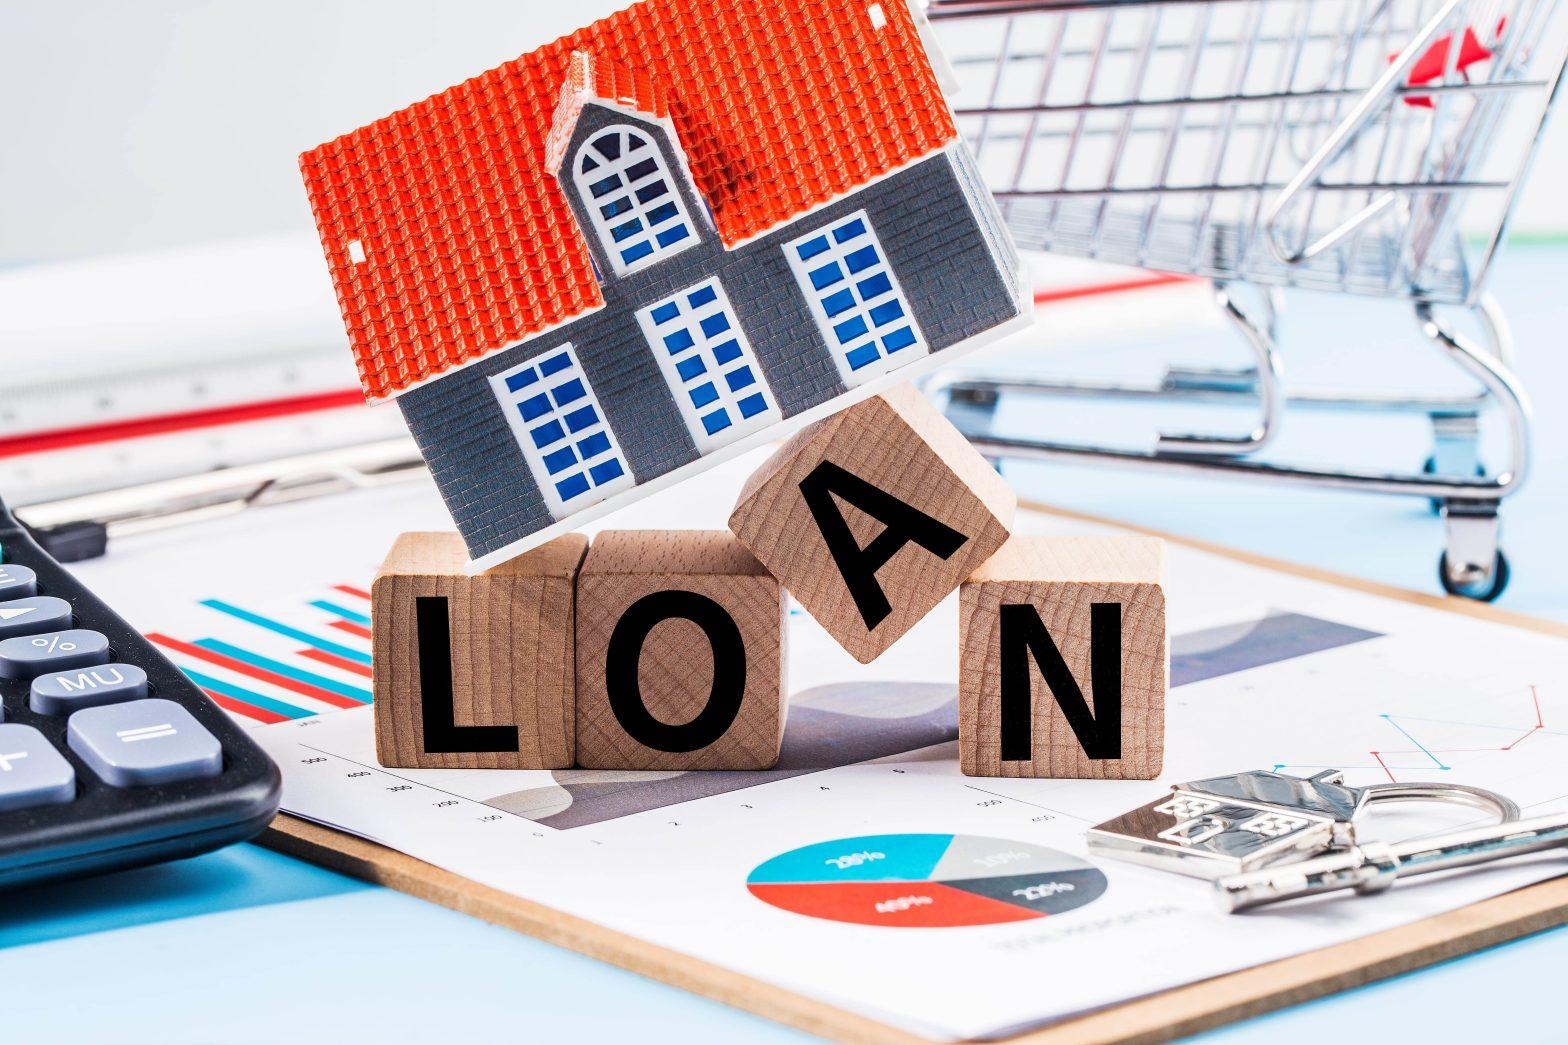 peer to peer lending in real estate